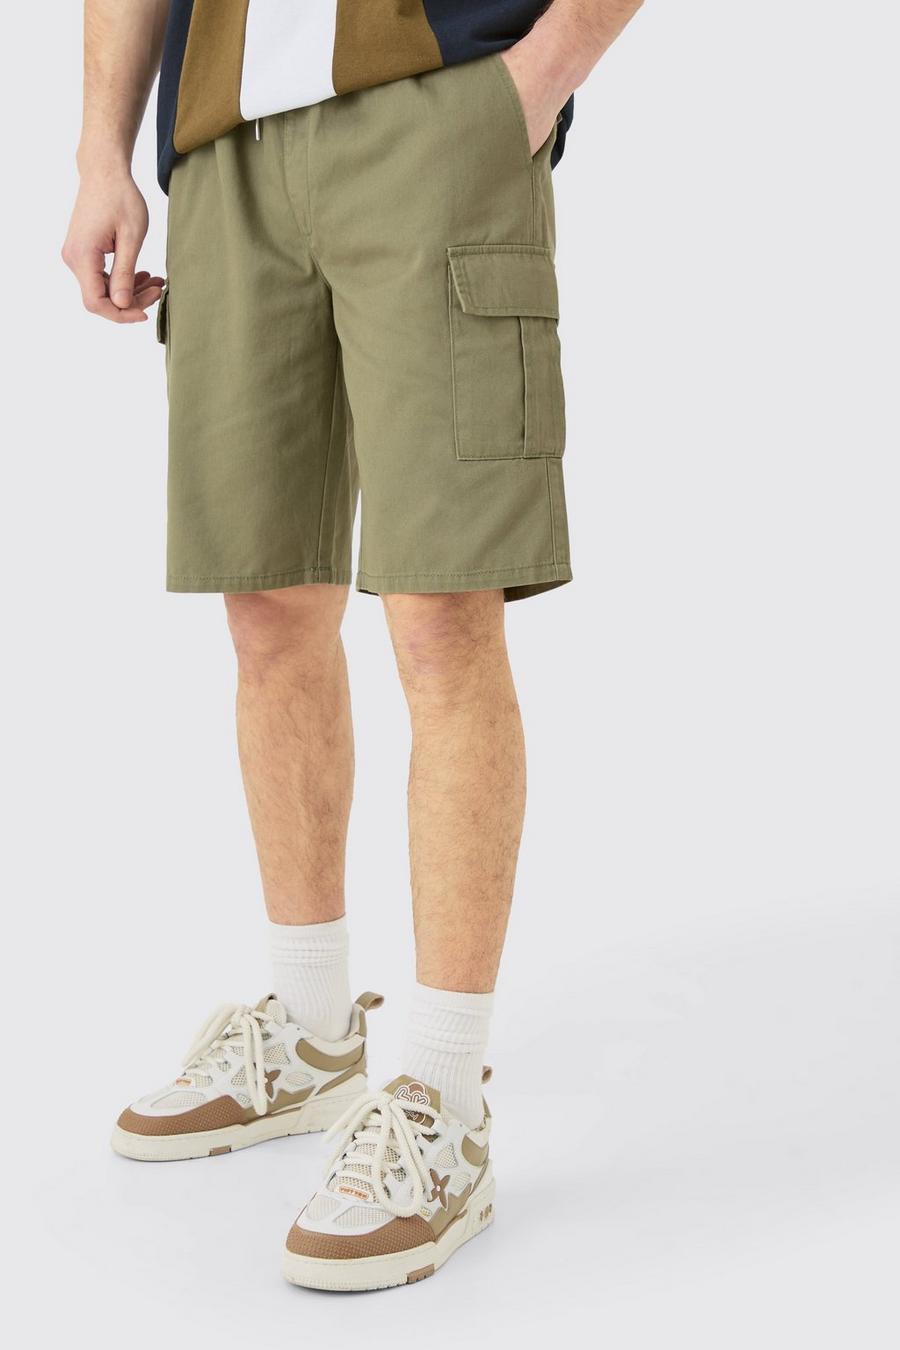 Pantalones cortos Tall cargo holgados con cintura elástica en color caqui, Khaki image number 1